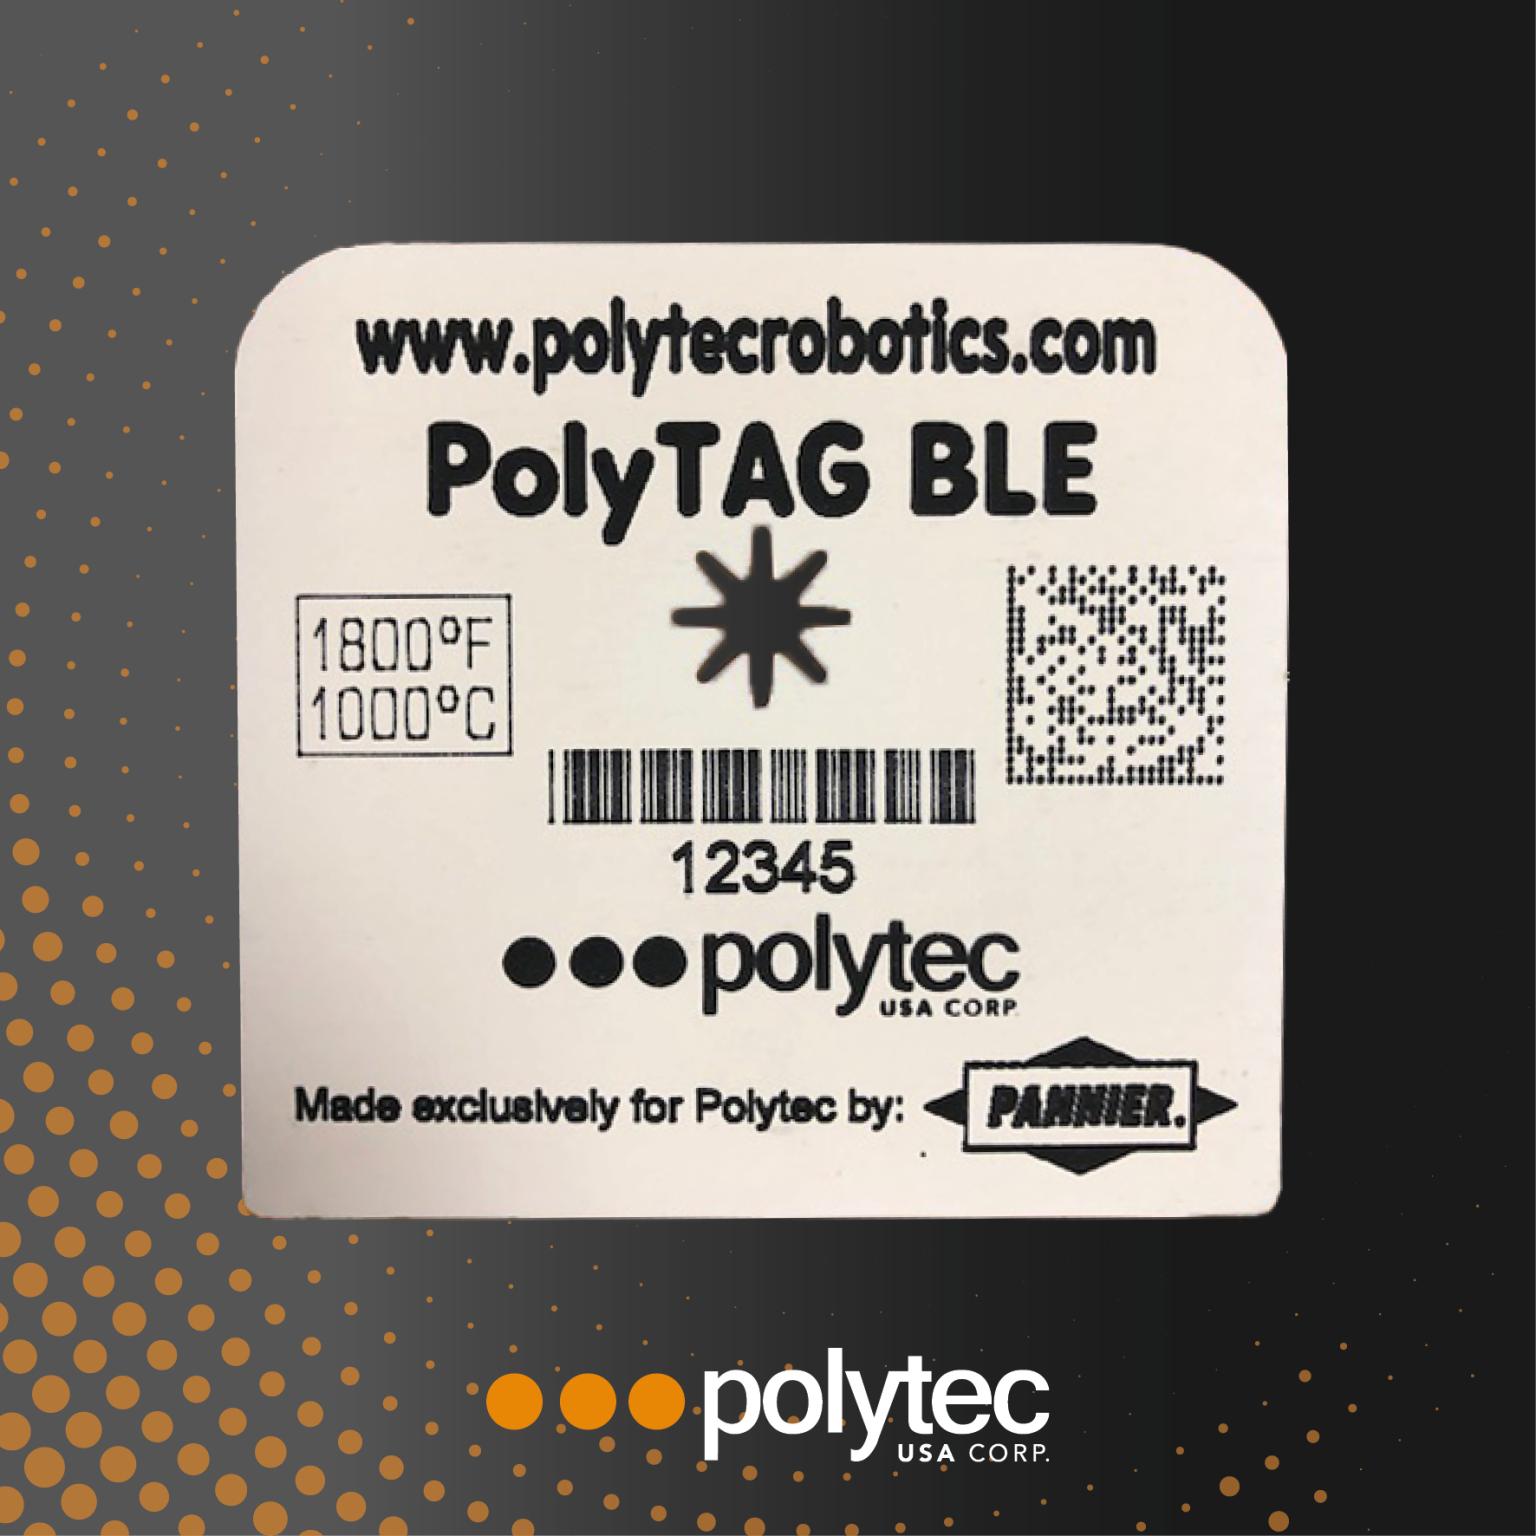 PolyTAG BLE - Etiquetas de seguimiento de tochos de acero a alta temperatura.